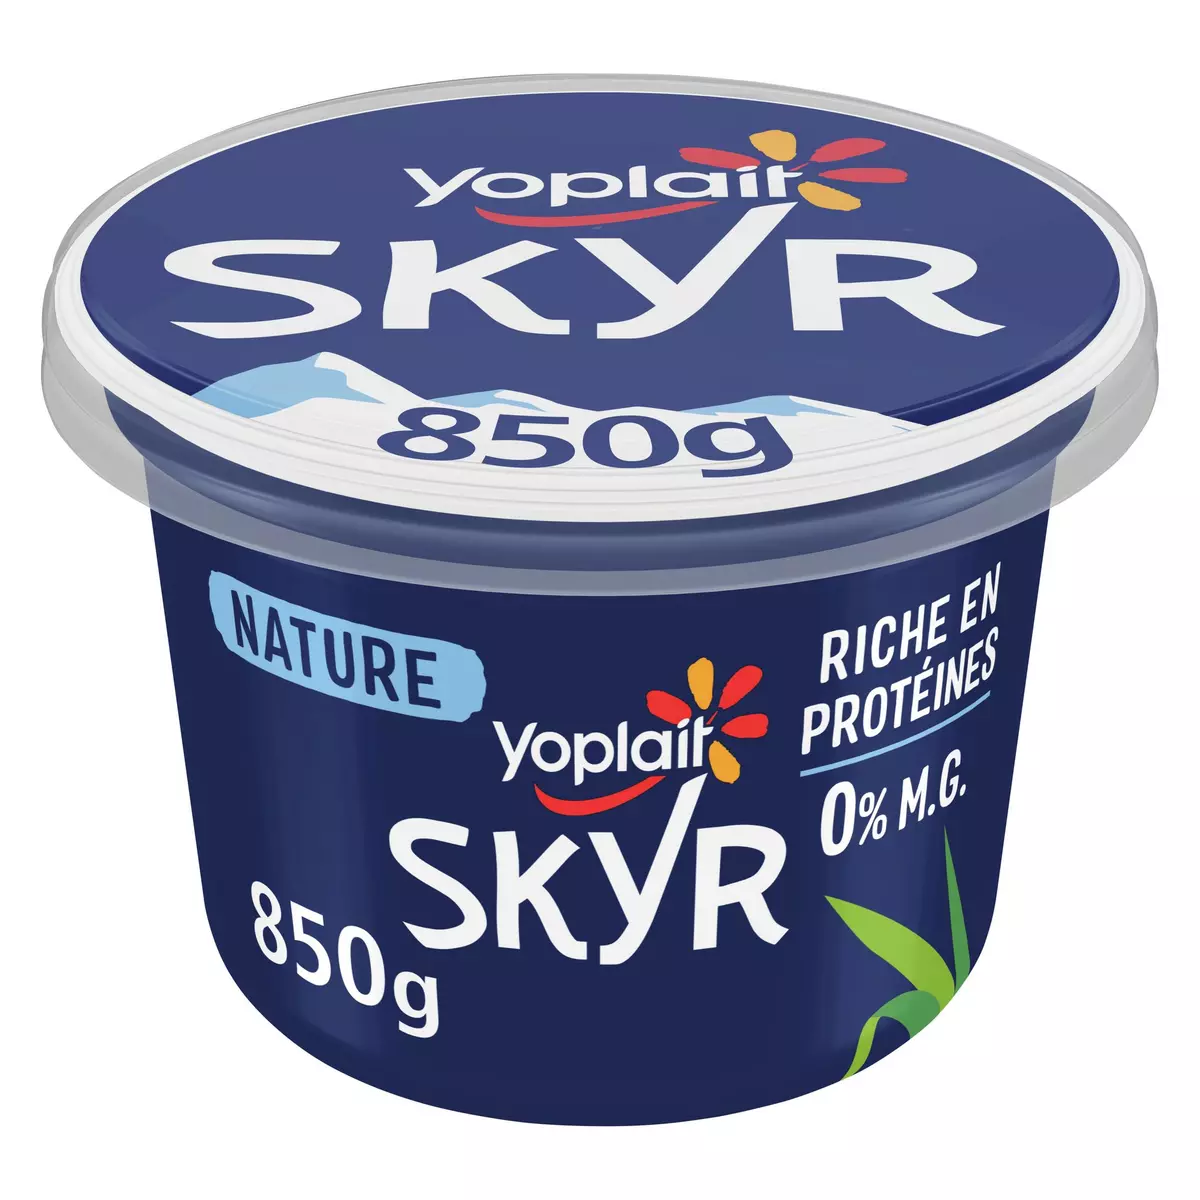 YOPLAIT Skyr nature 0% recette islandaise 8/9 parts 850g